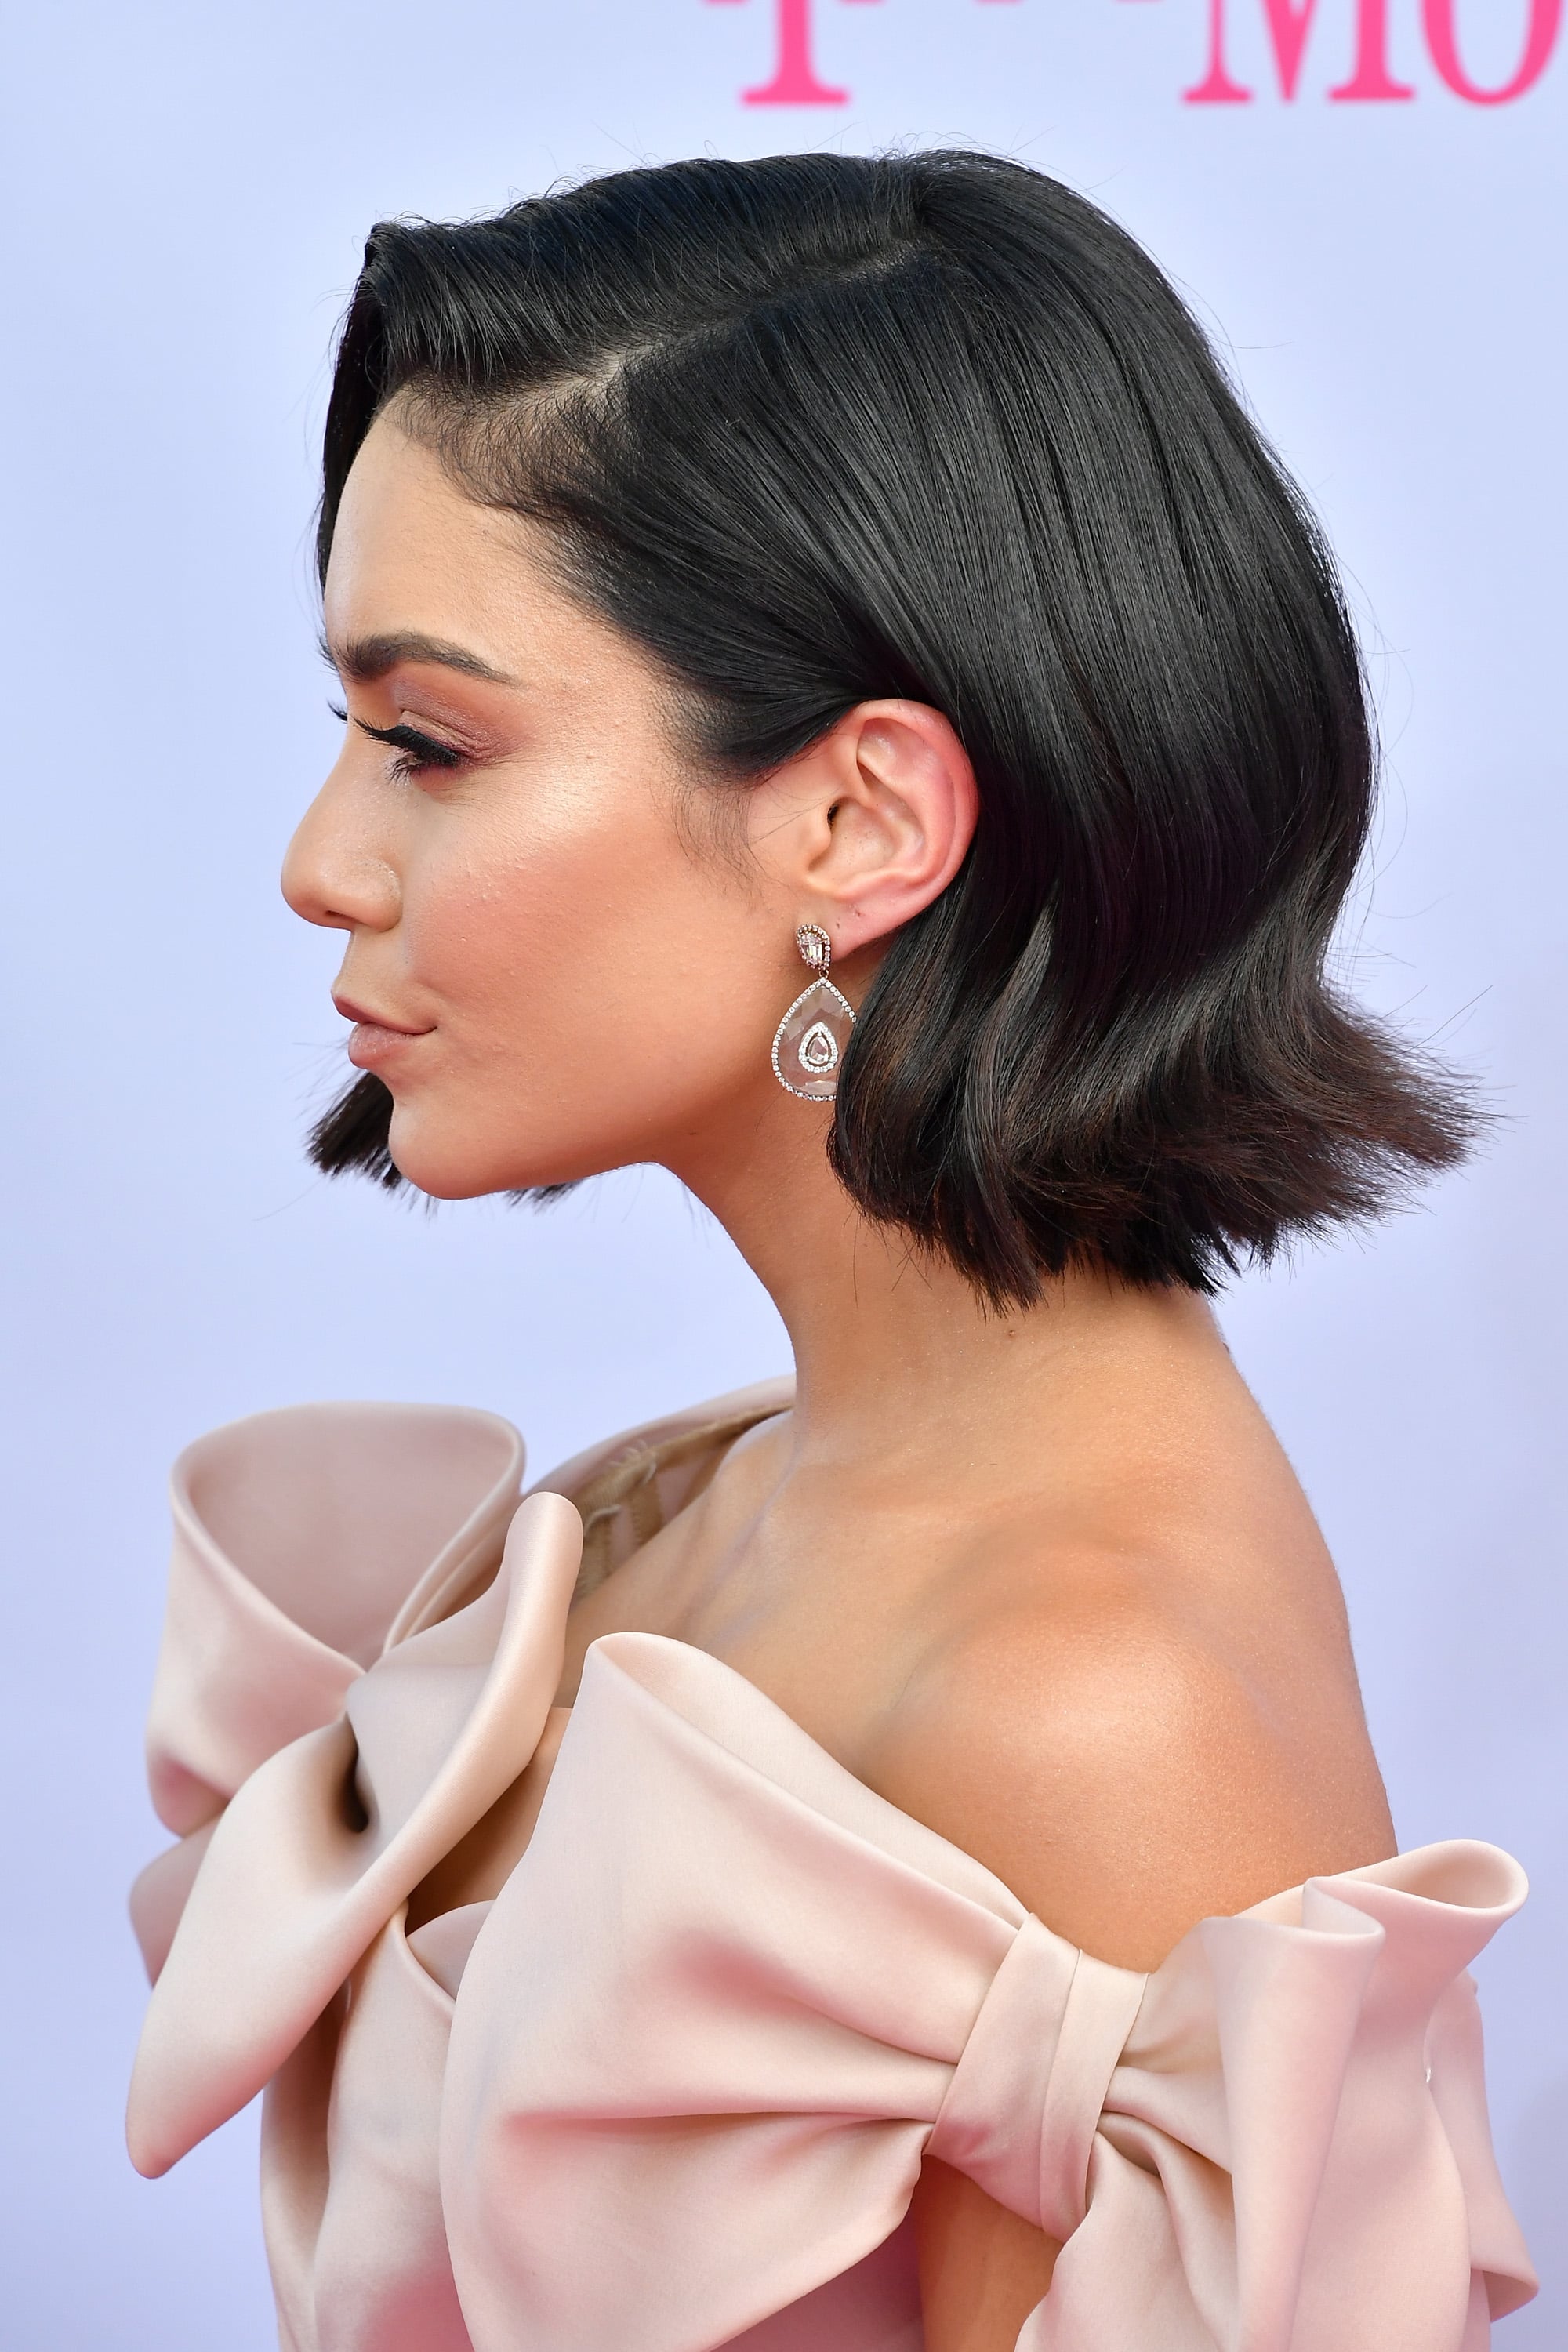 Vanessa Hudgens Hair and Makeup at the 2017 Billboard 